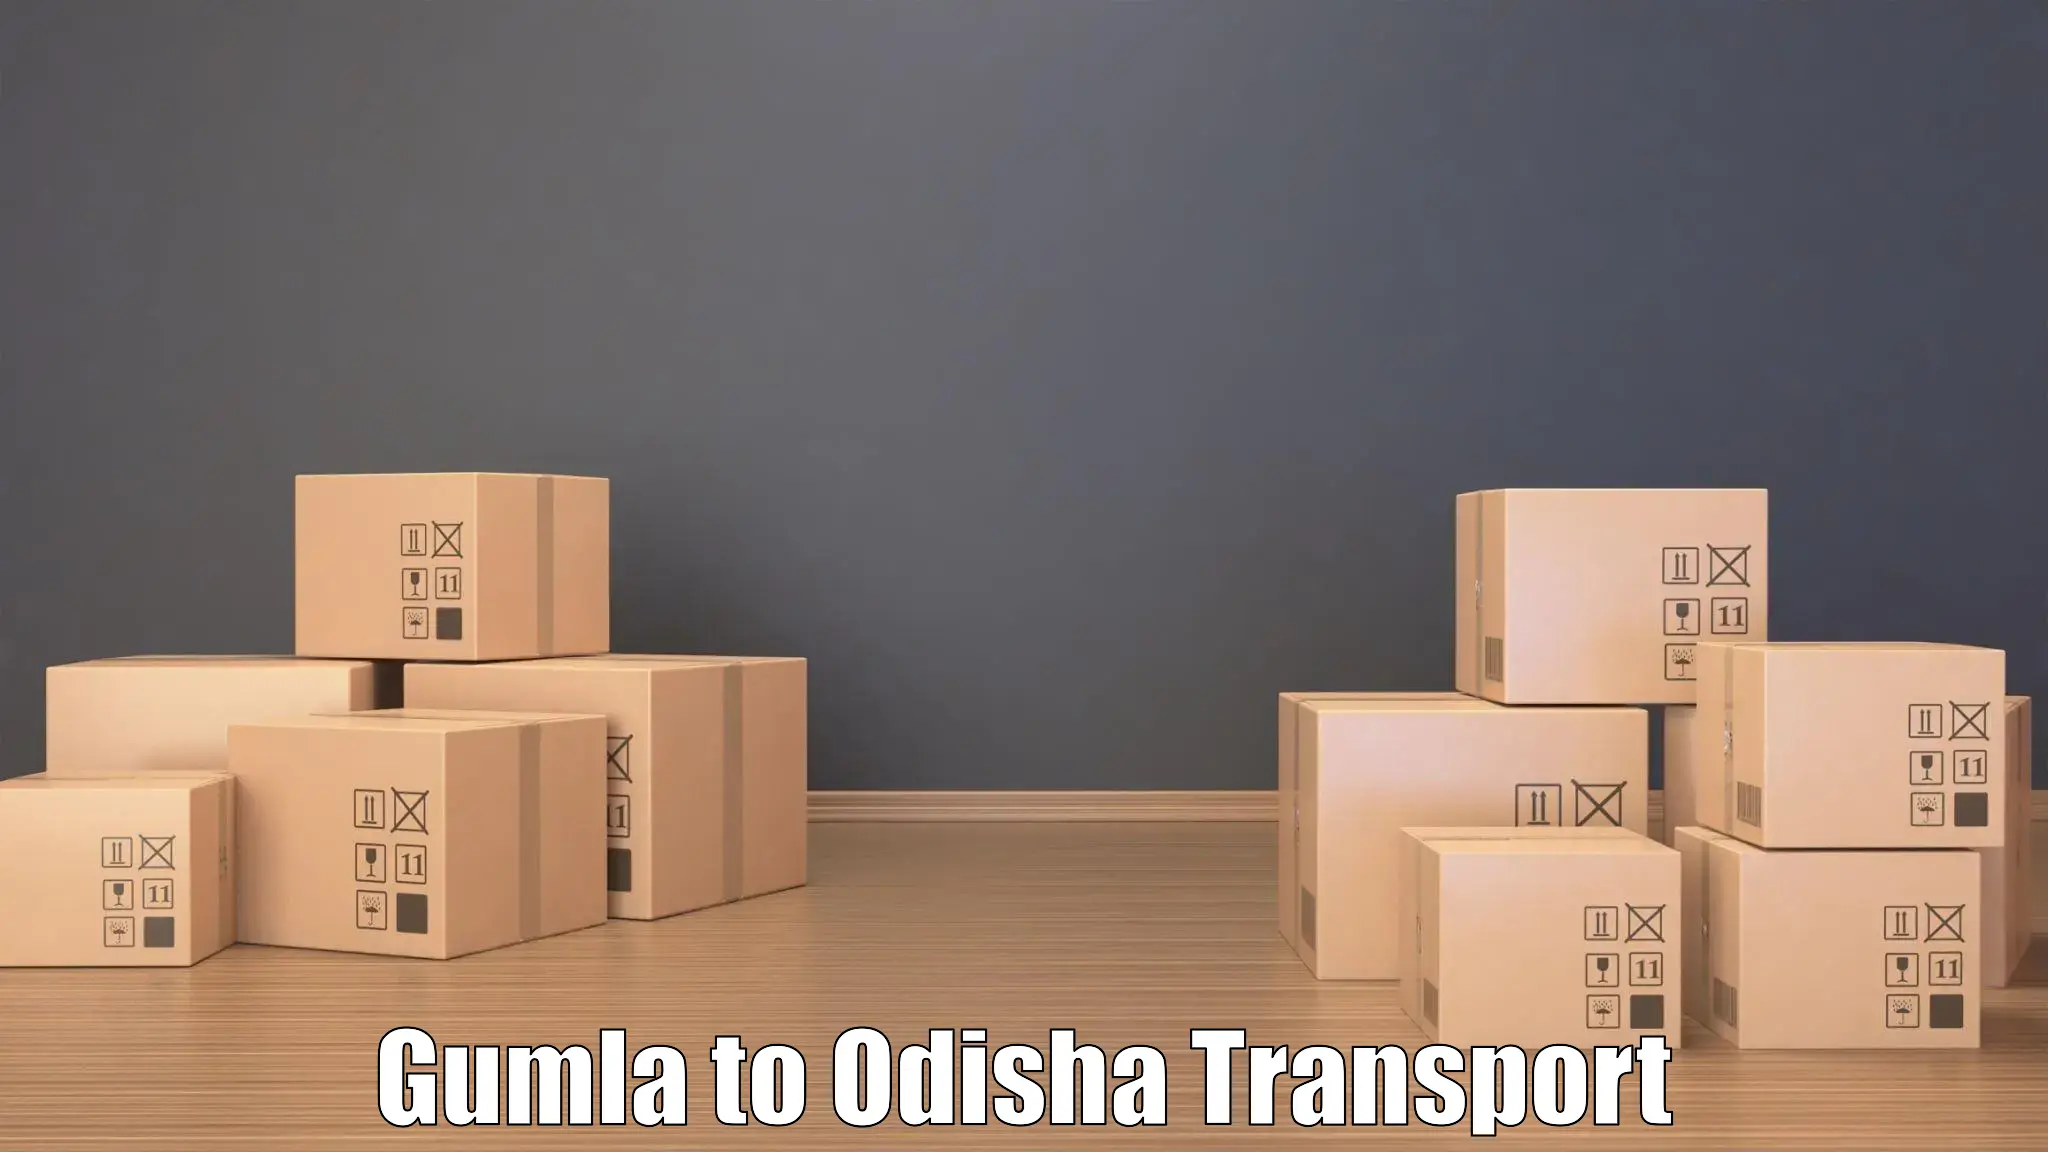 Vehicle transport services Gumla to Chandinchowk